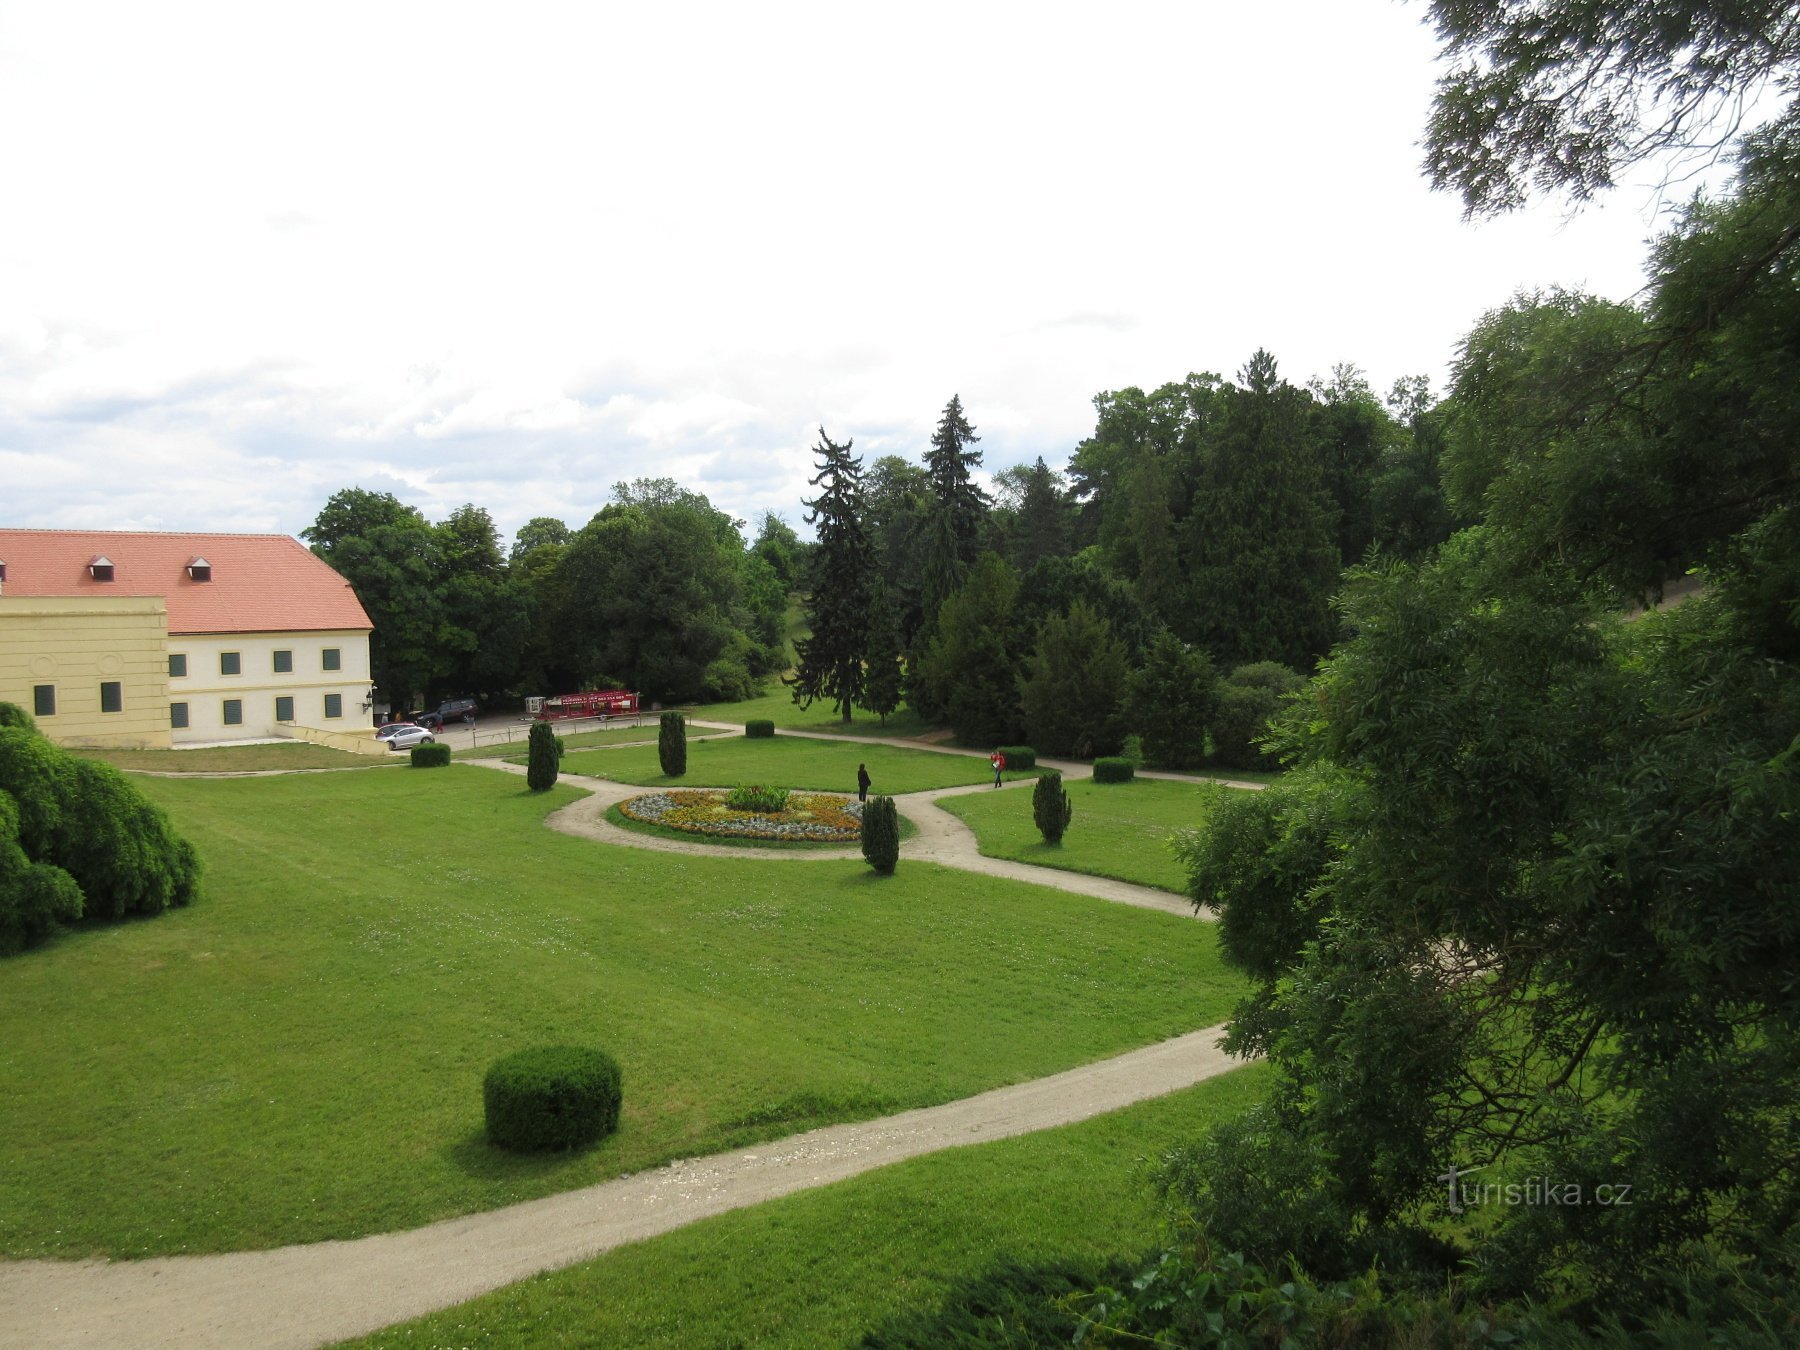 Πάρκο Chateau